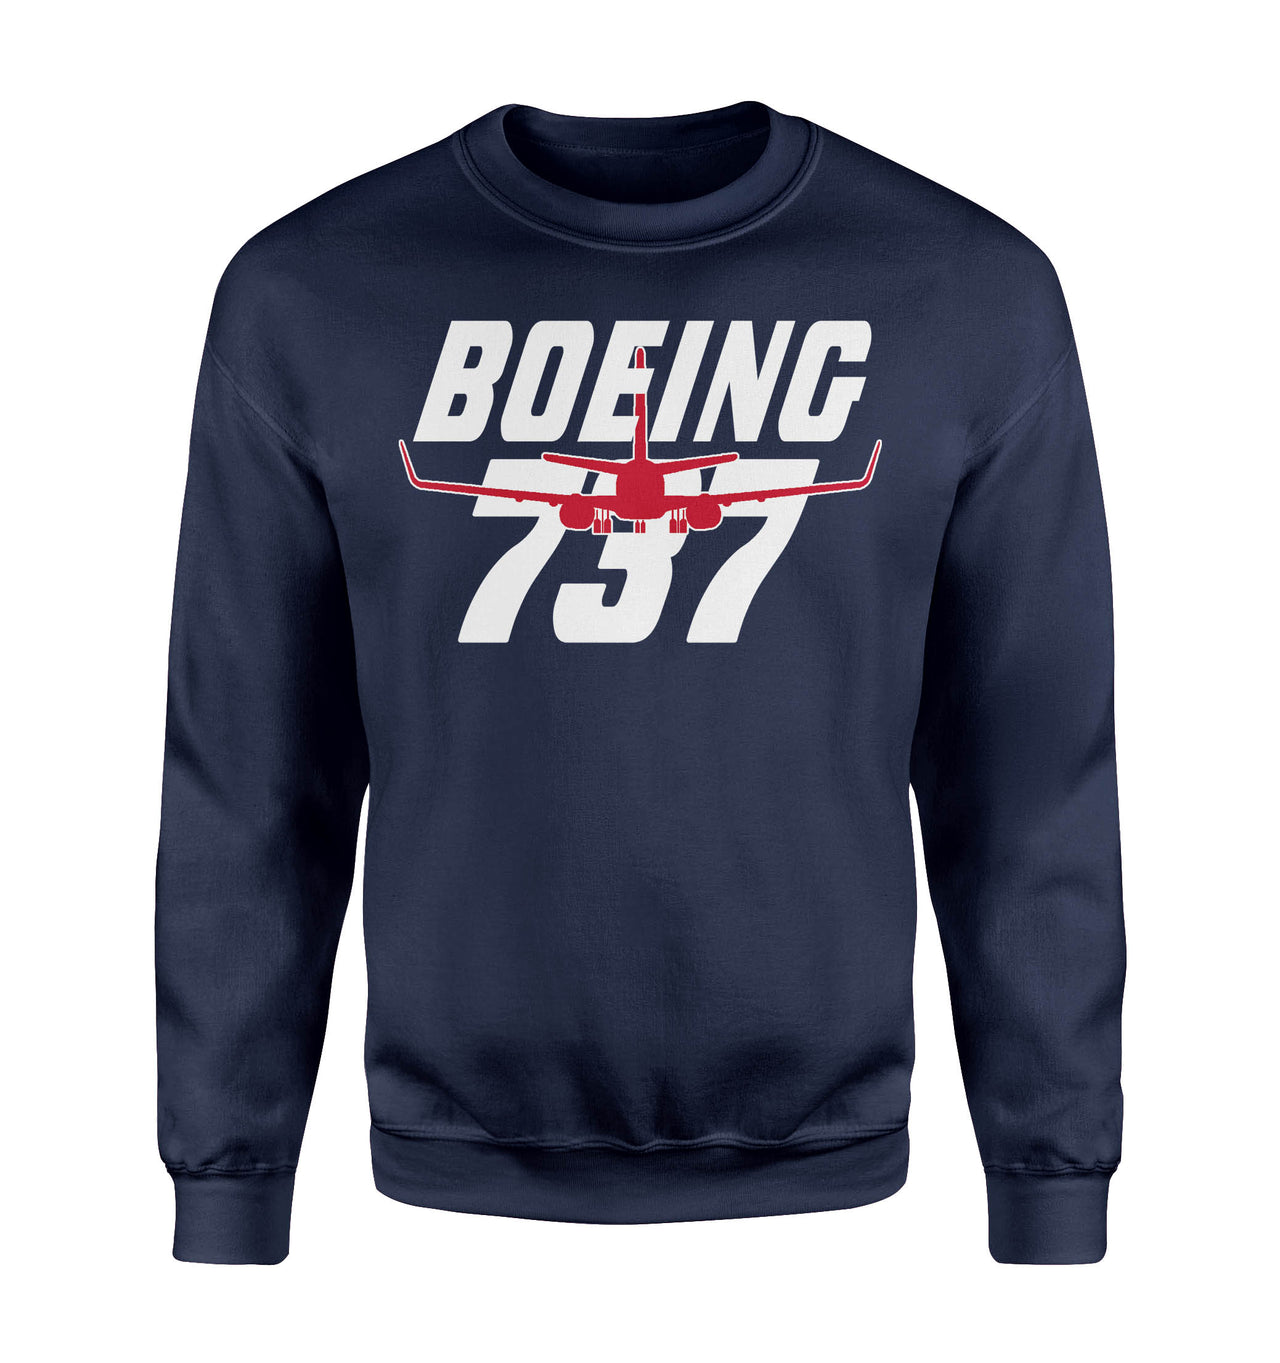 Amazing Boeing 737 Designed Sweatshirts